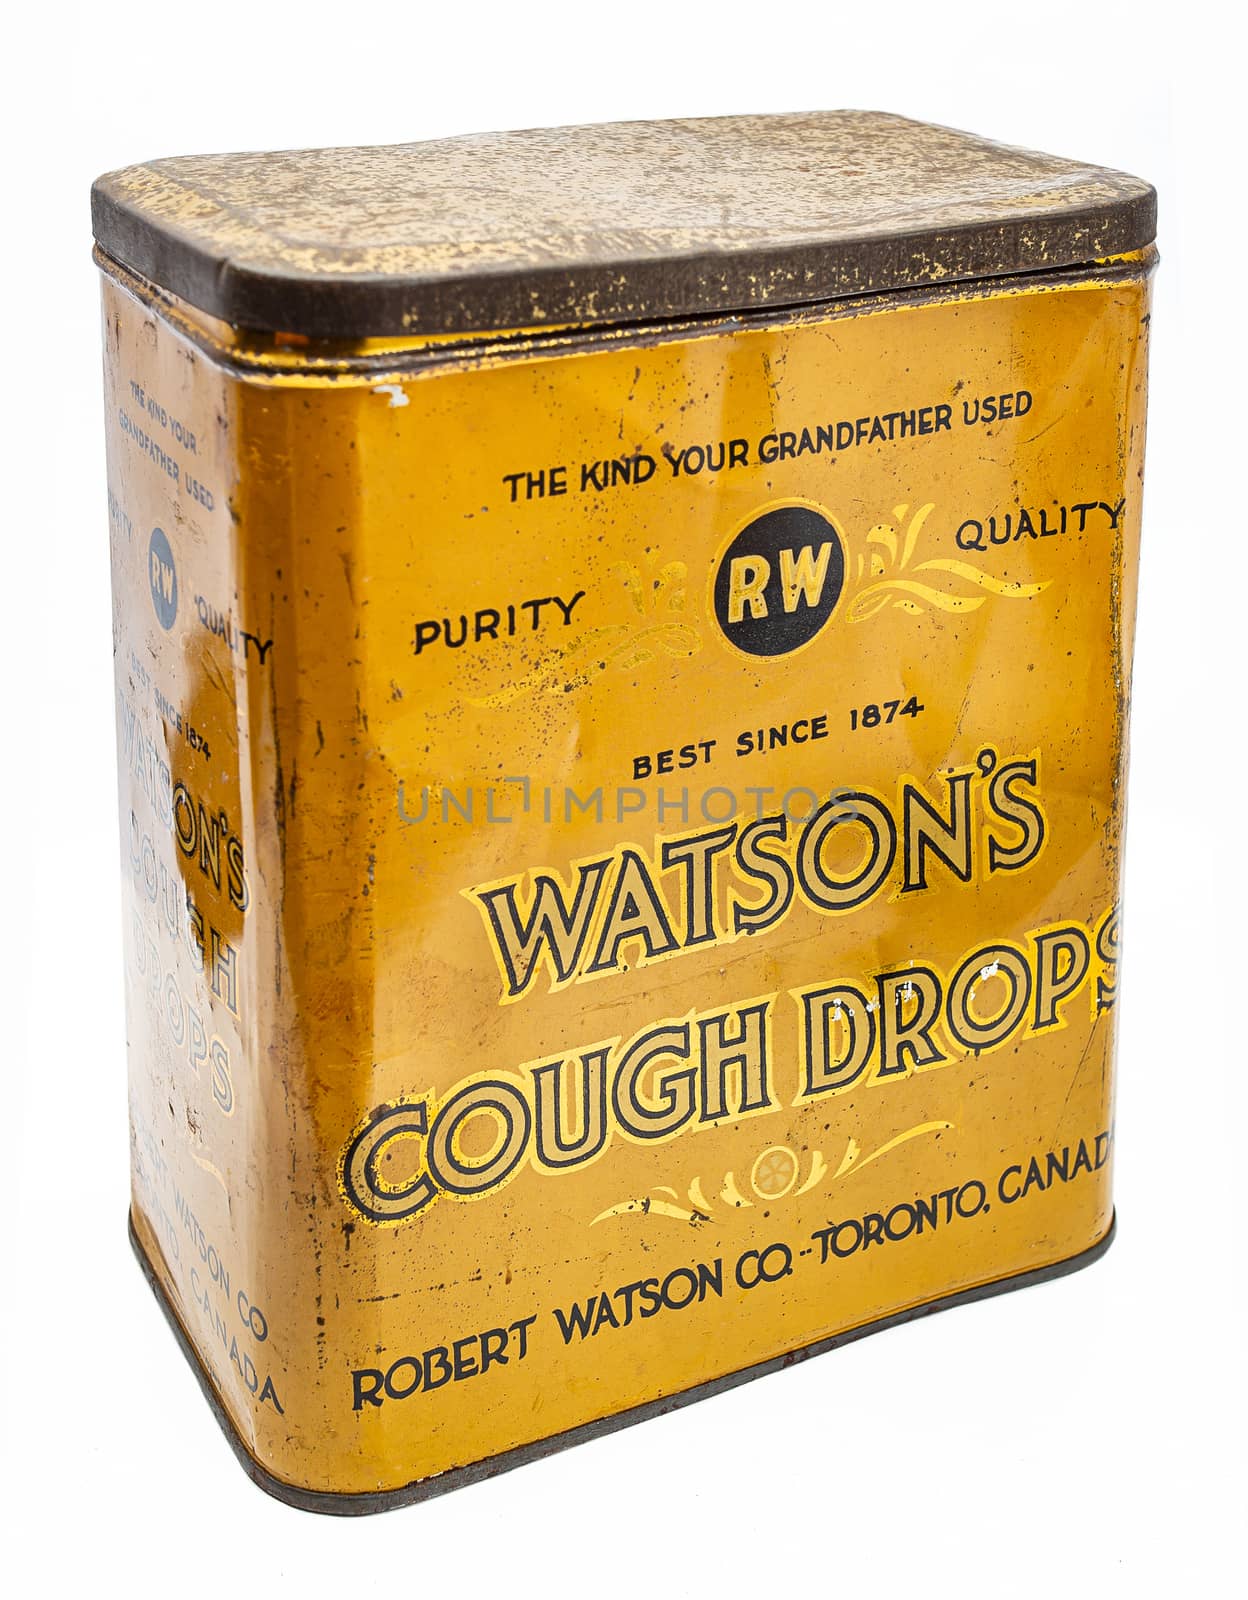 Vintage cough drop box by mypstudio